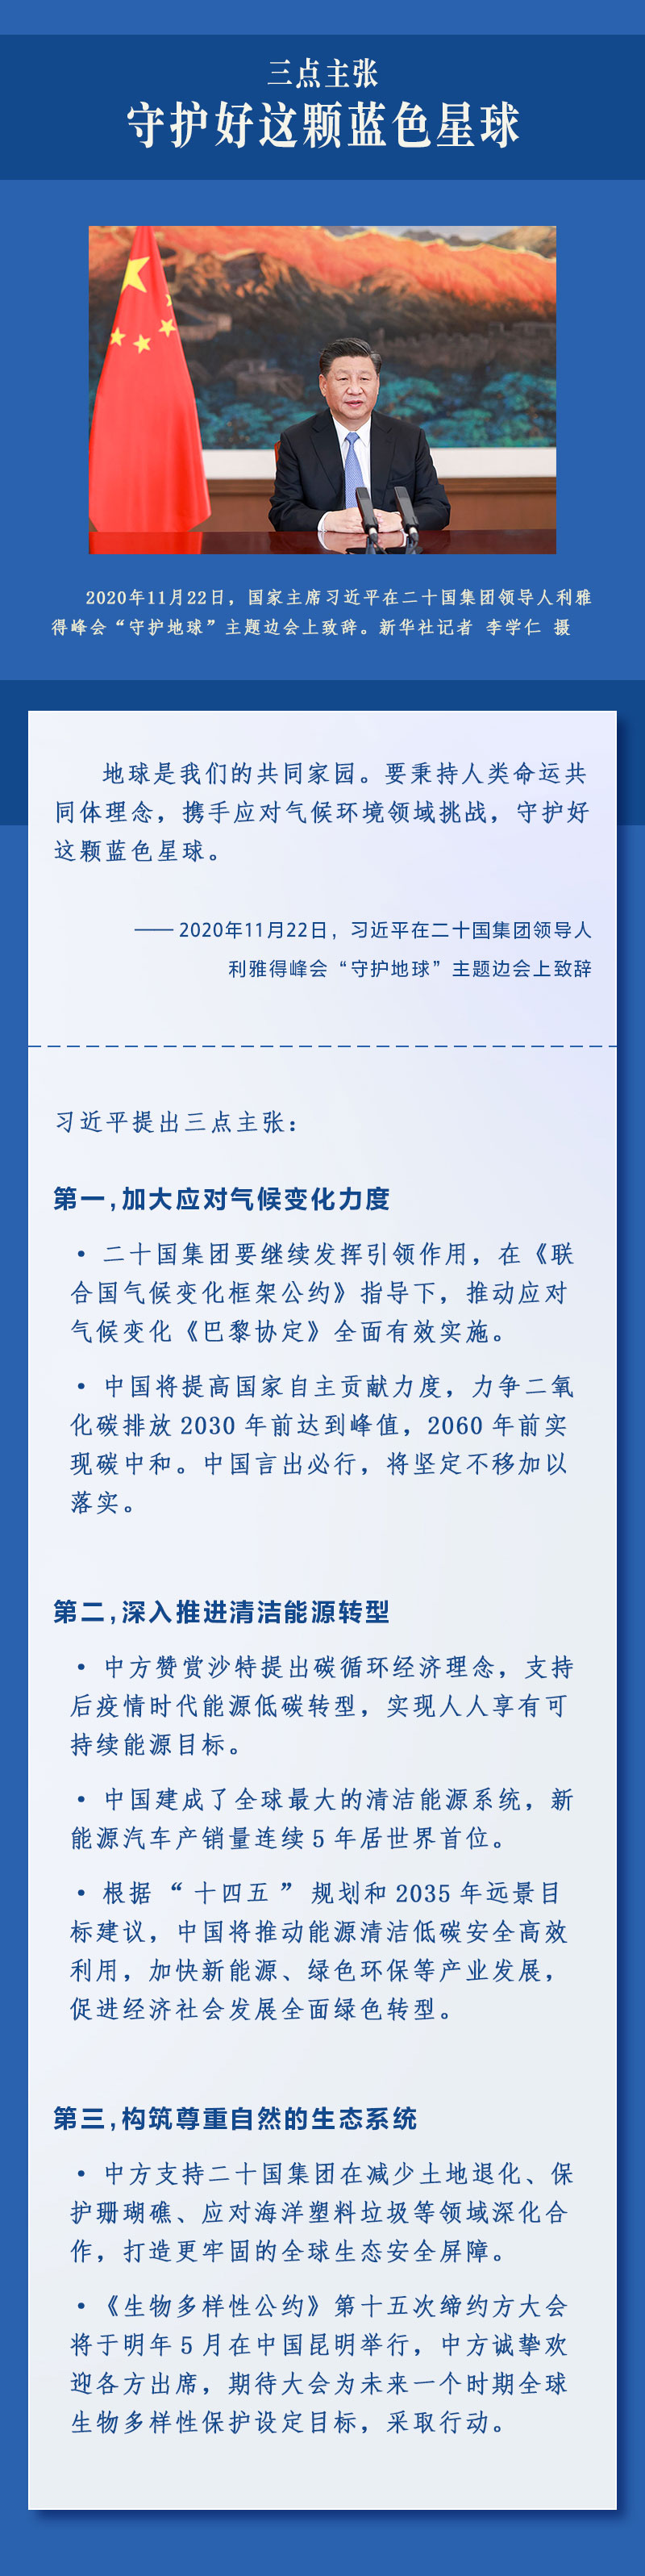 习近平提出中国方案2 人民网-中国共产党新闻网.jpg